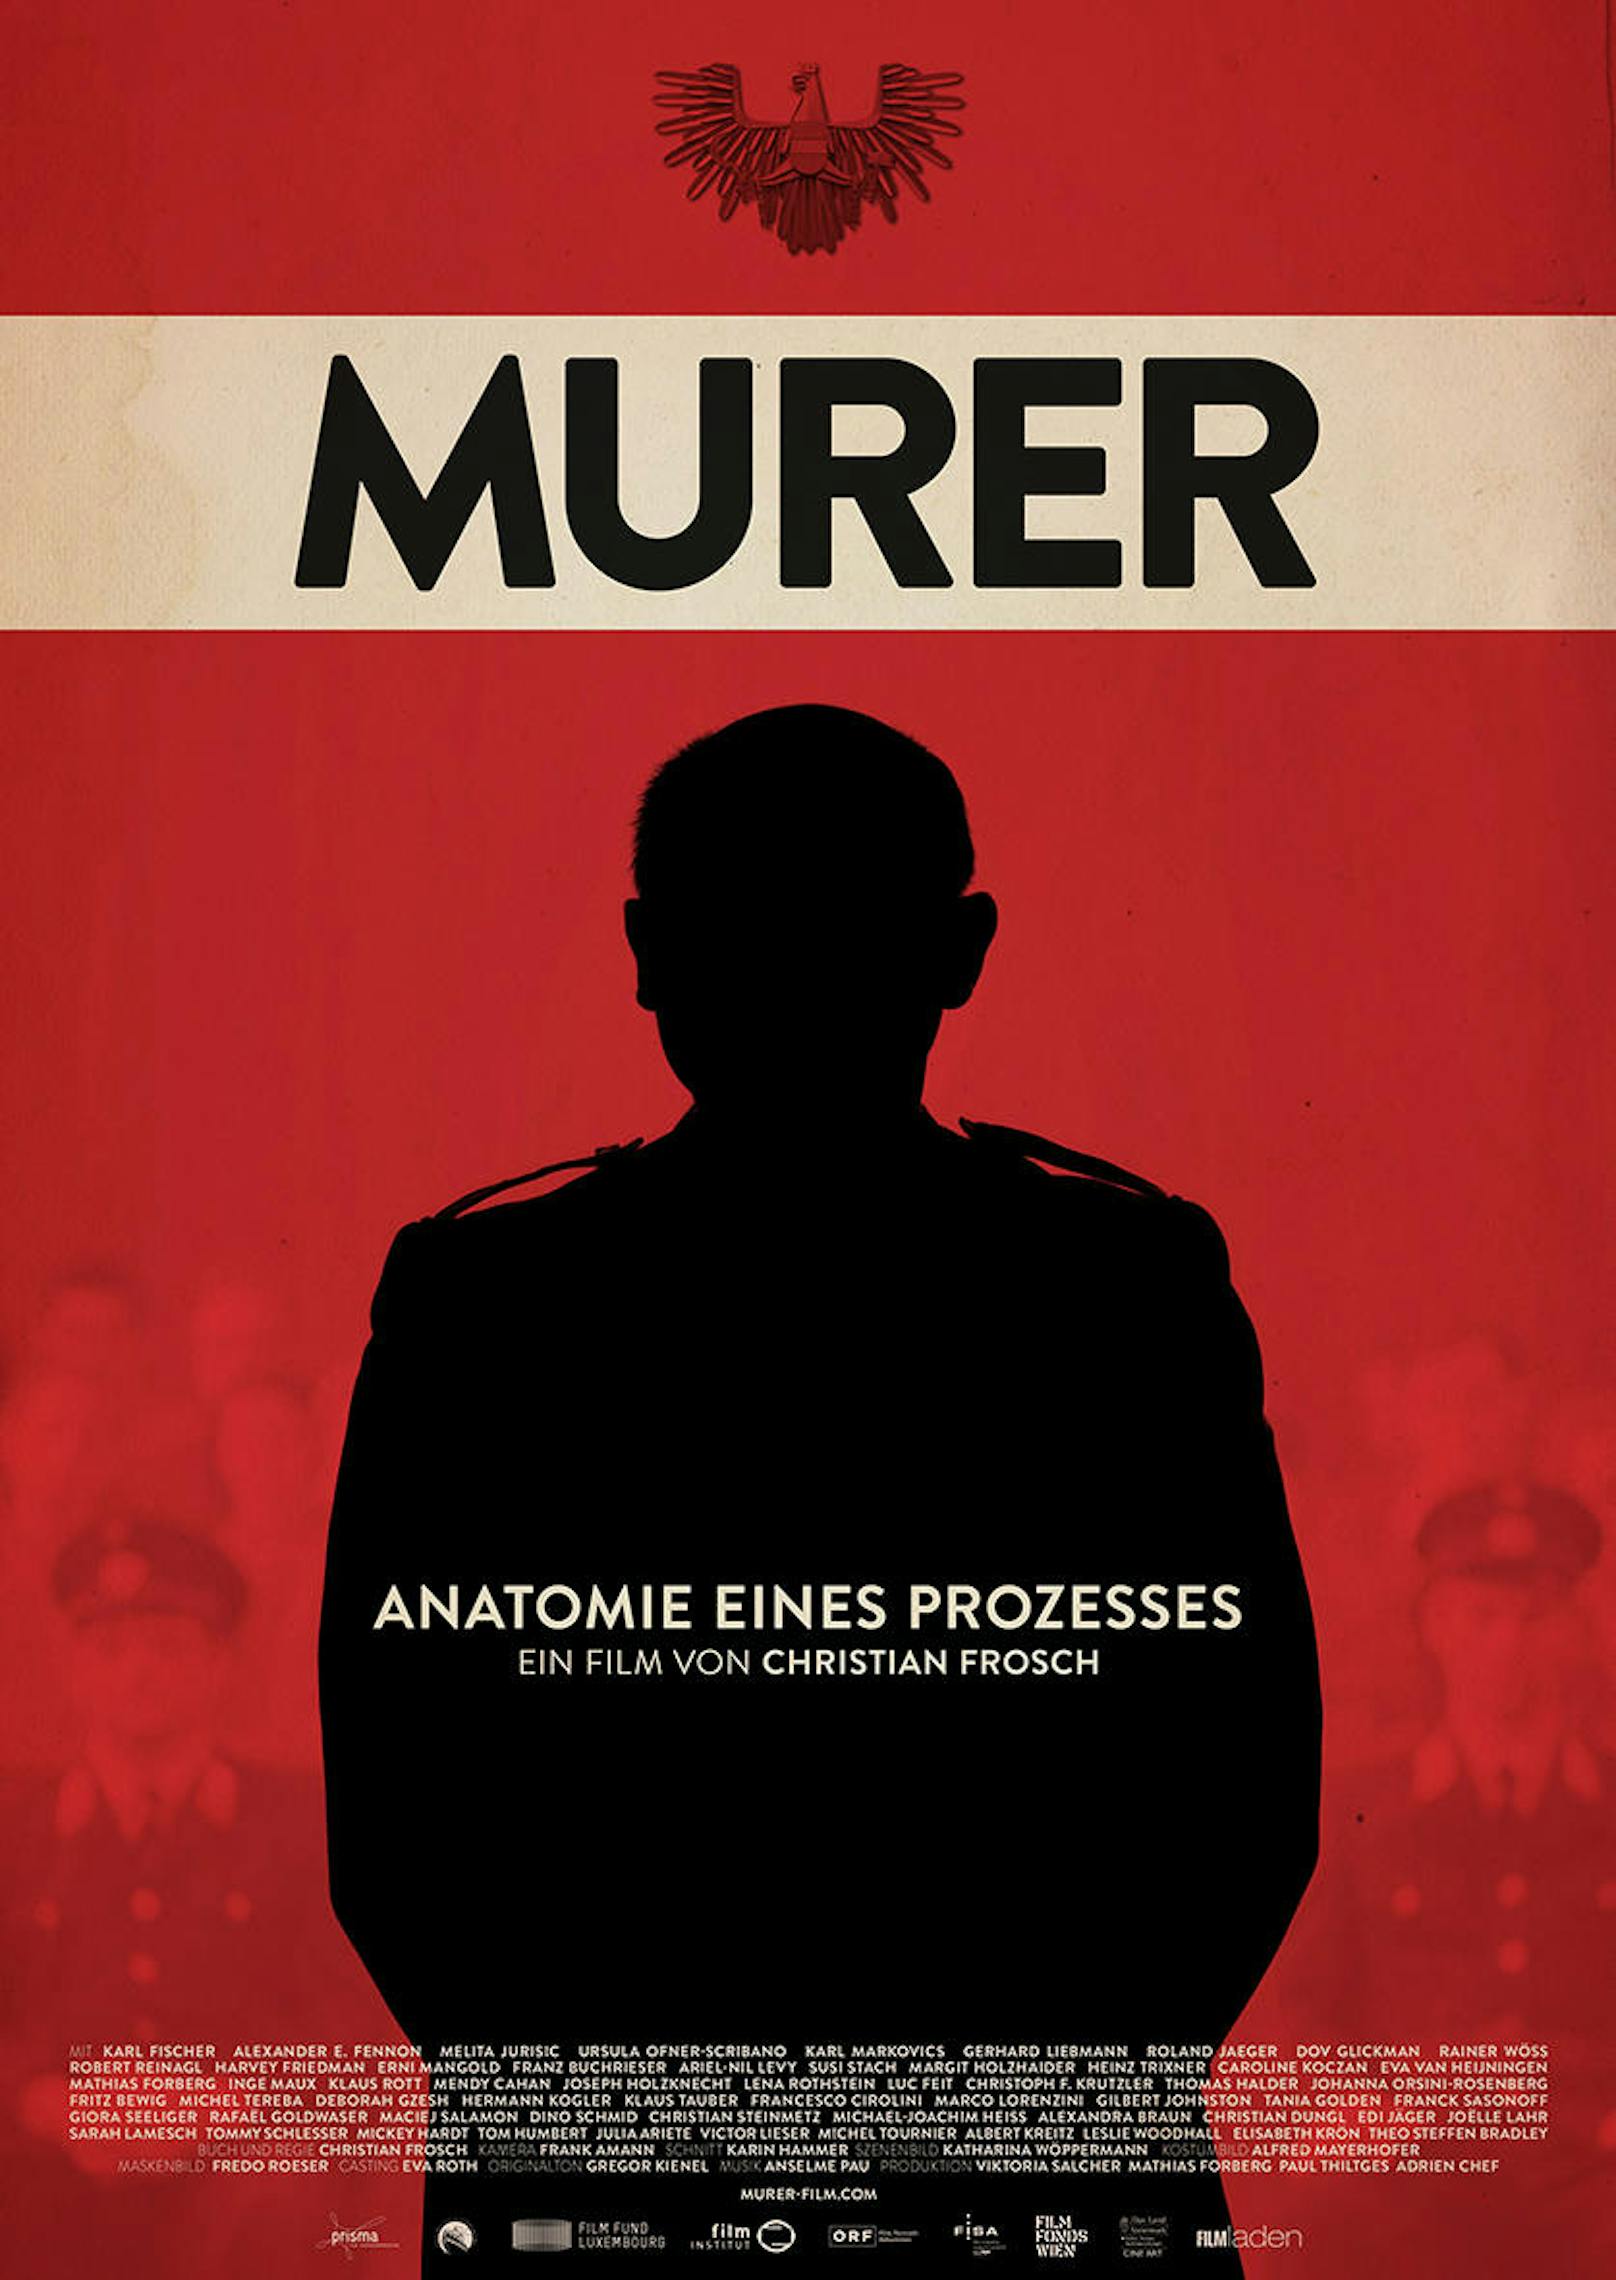 Murer - Anatomie eines Prozesses 
Filmplakat